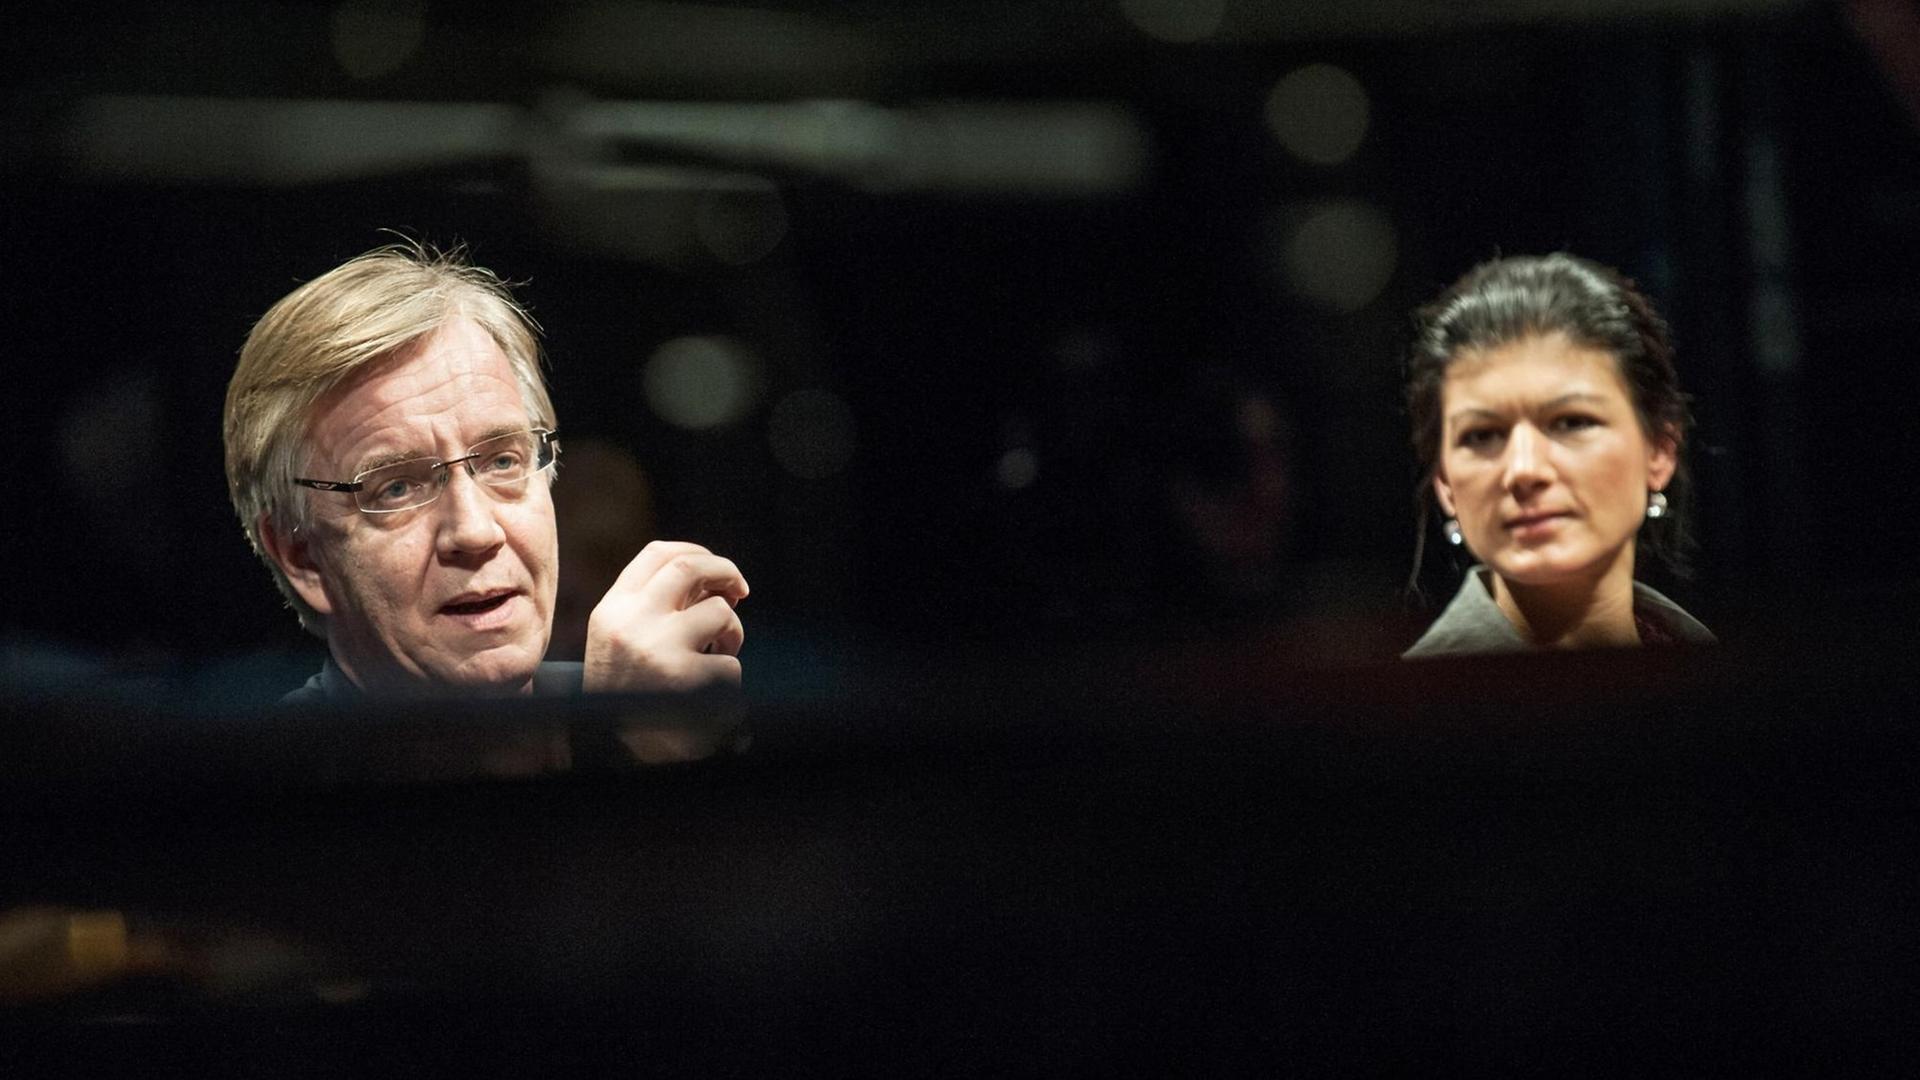 Sahra Wagenknecht und Dietmar Bartsch, aufgenommen am 11.1.2015, sollen künftig die Bundestagsfraktion der Linkspartei führen.